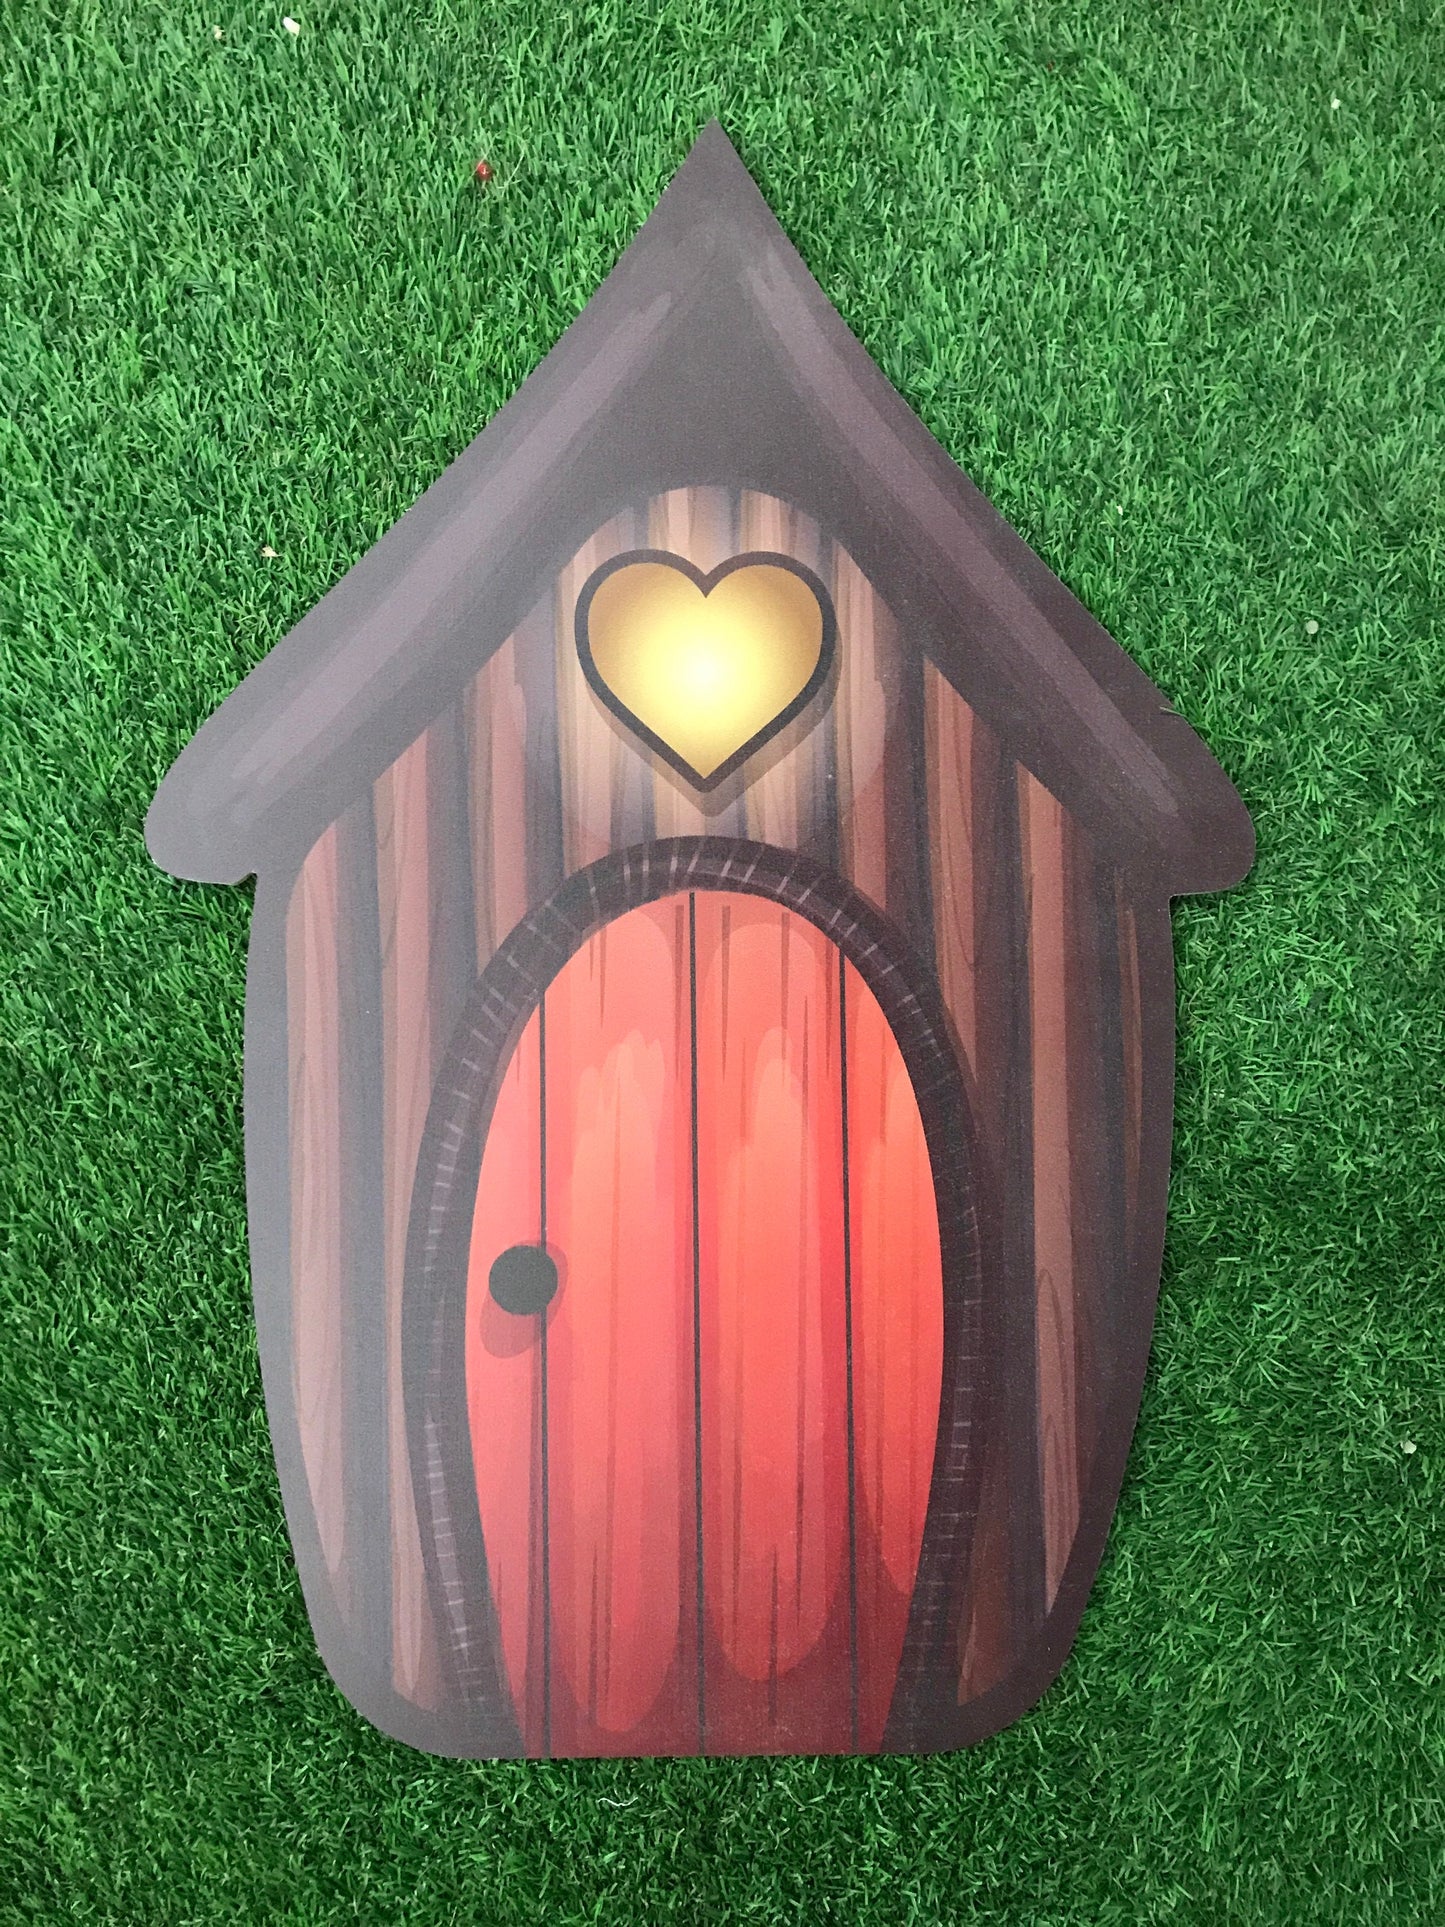 Wooden Fairytale House Cutout